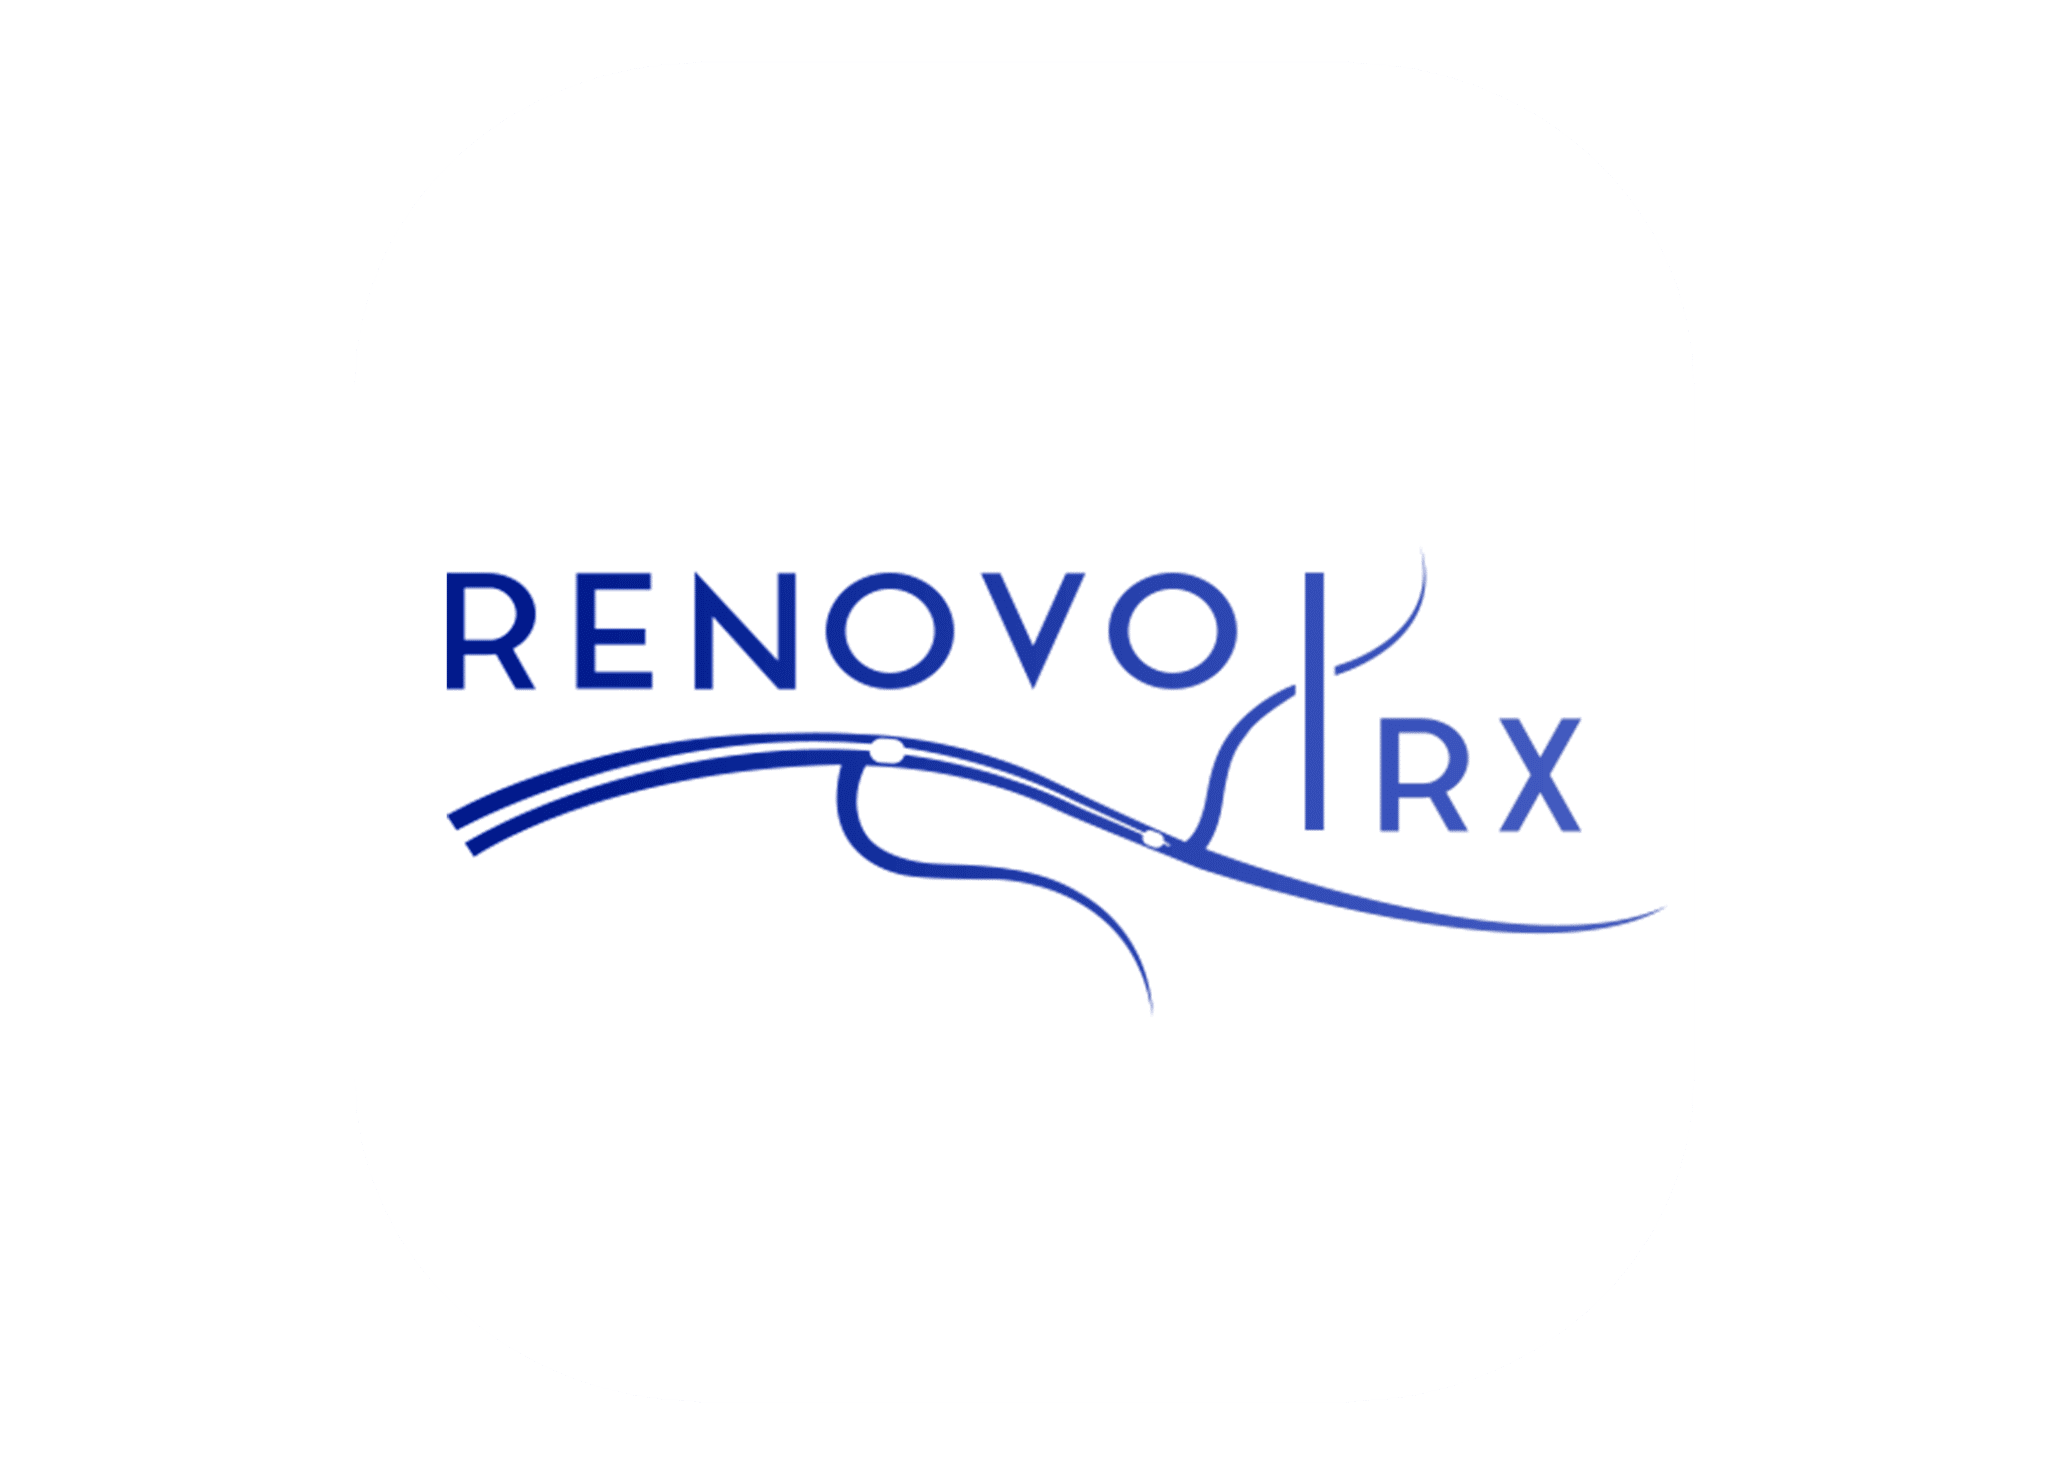 RenovoRX